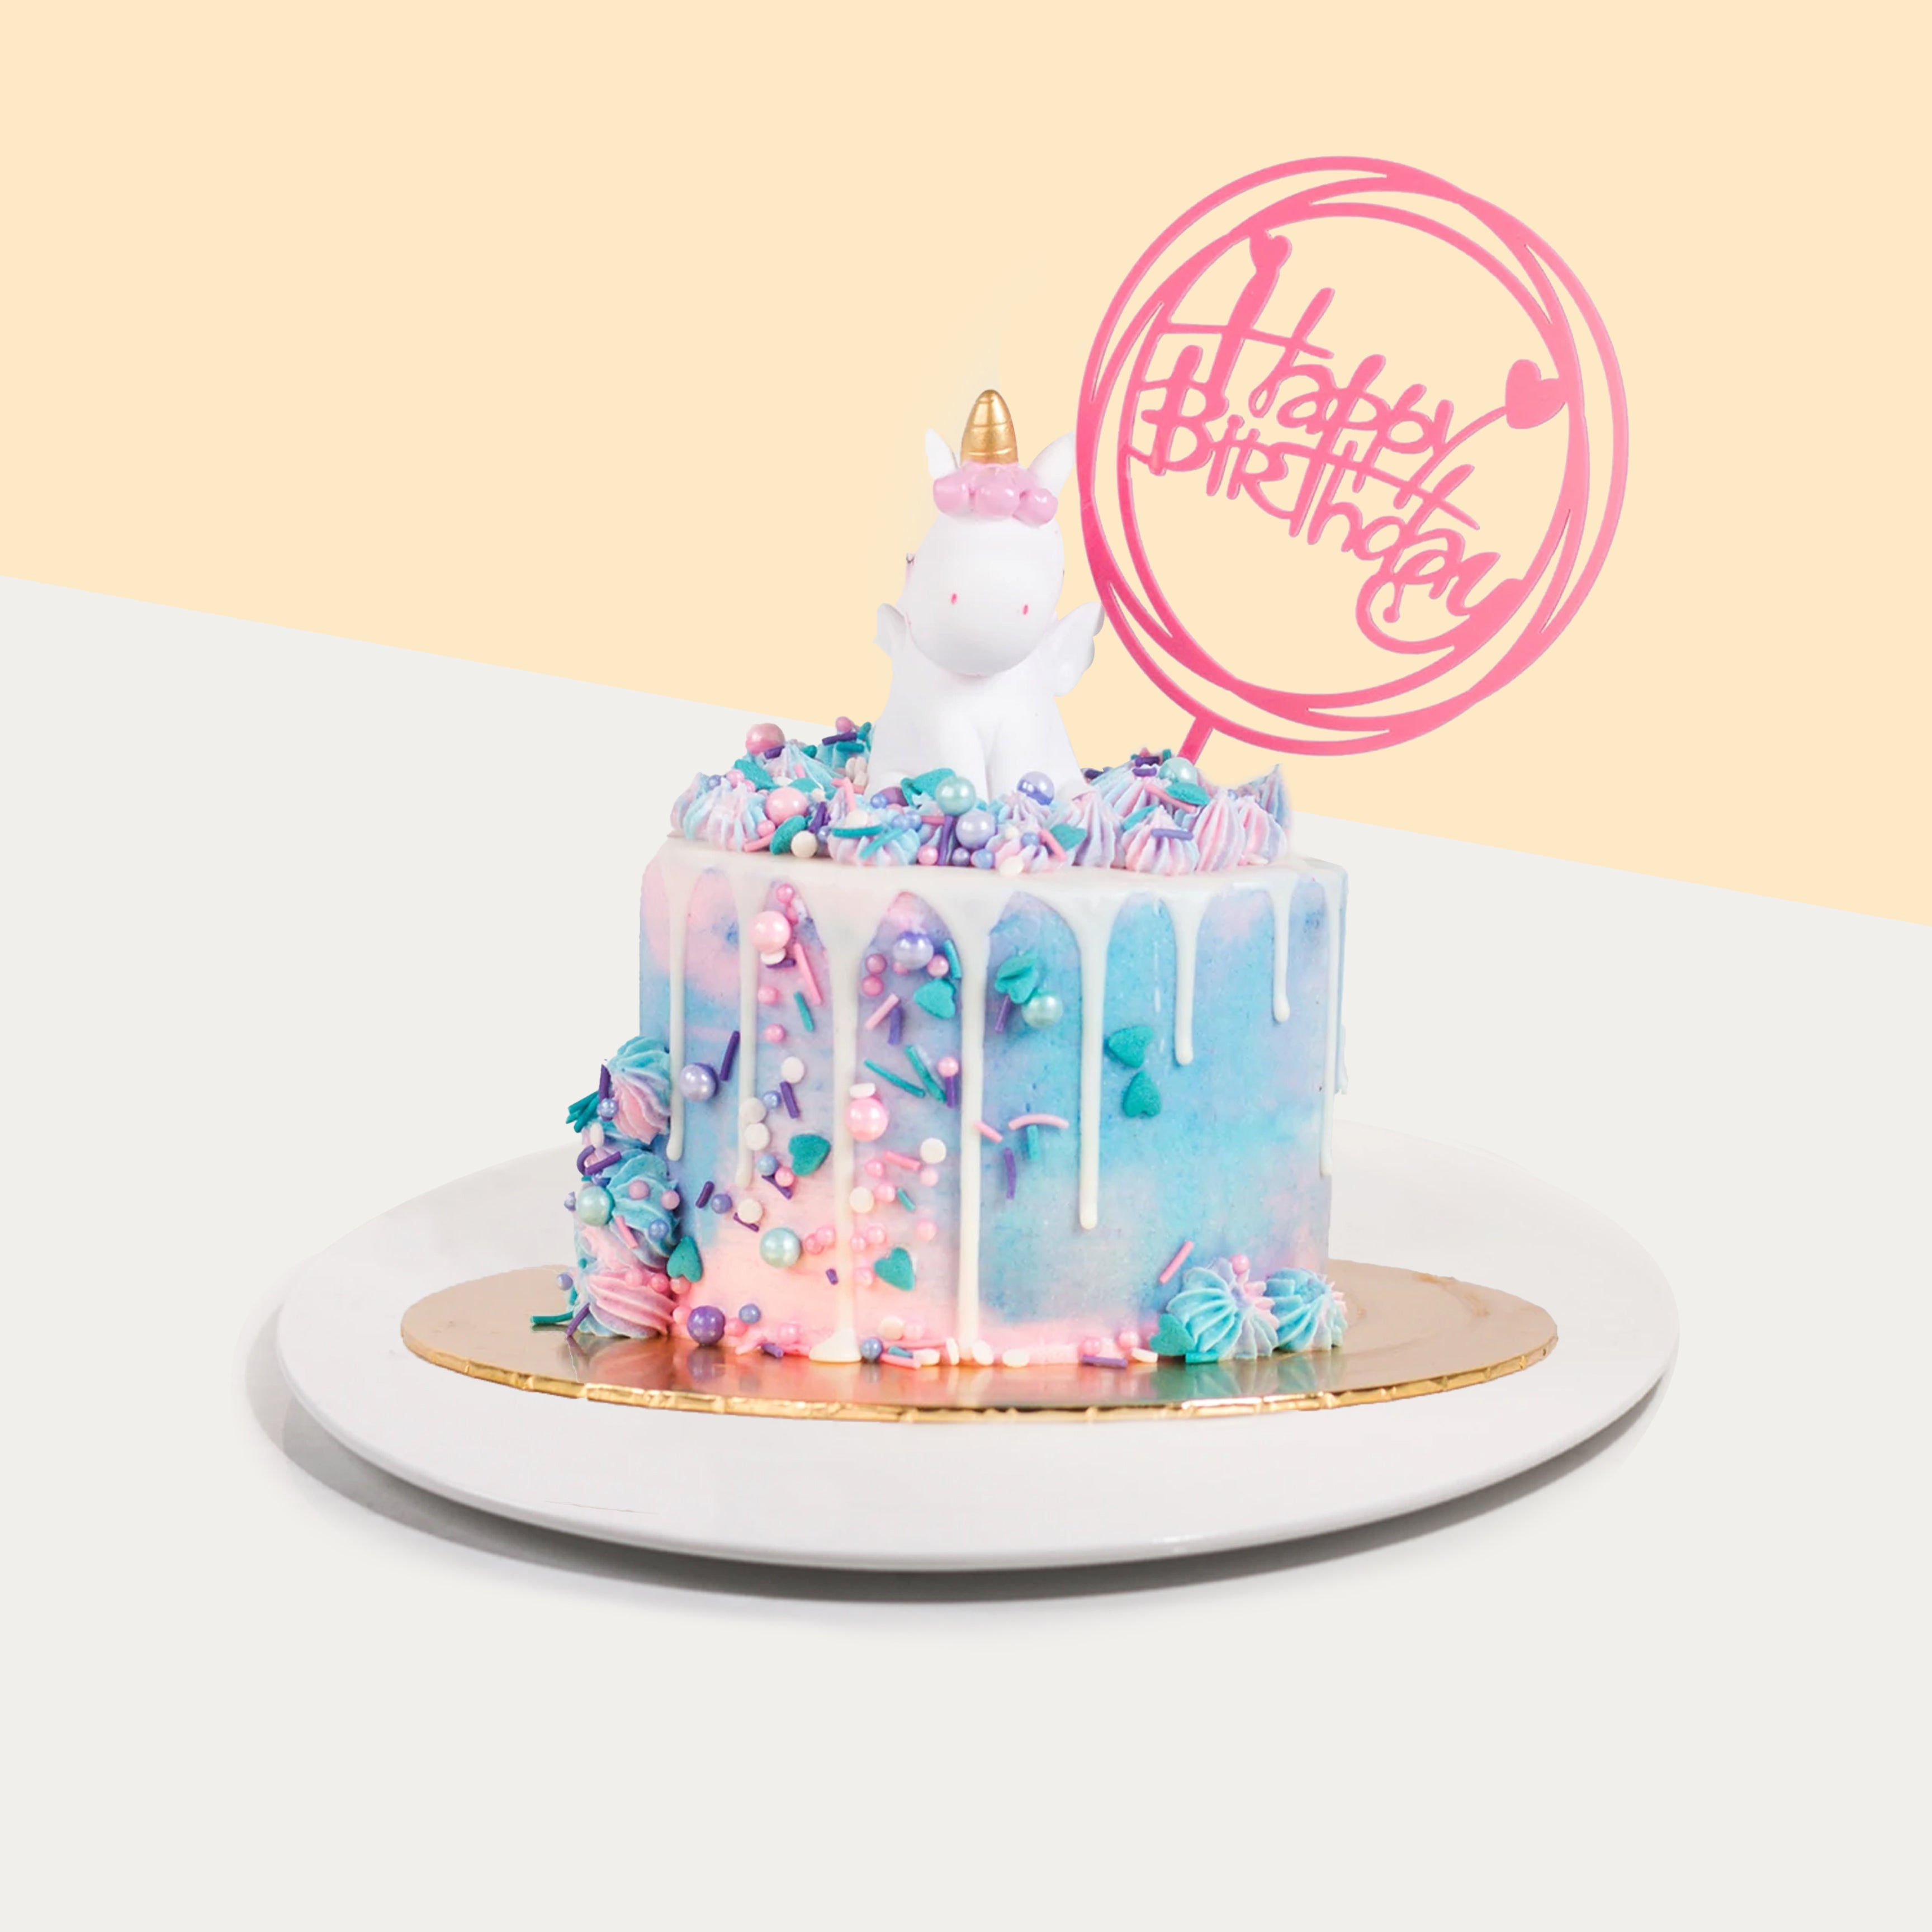 Mirror Glazed Birthday Cake | bakehoney.com